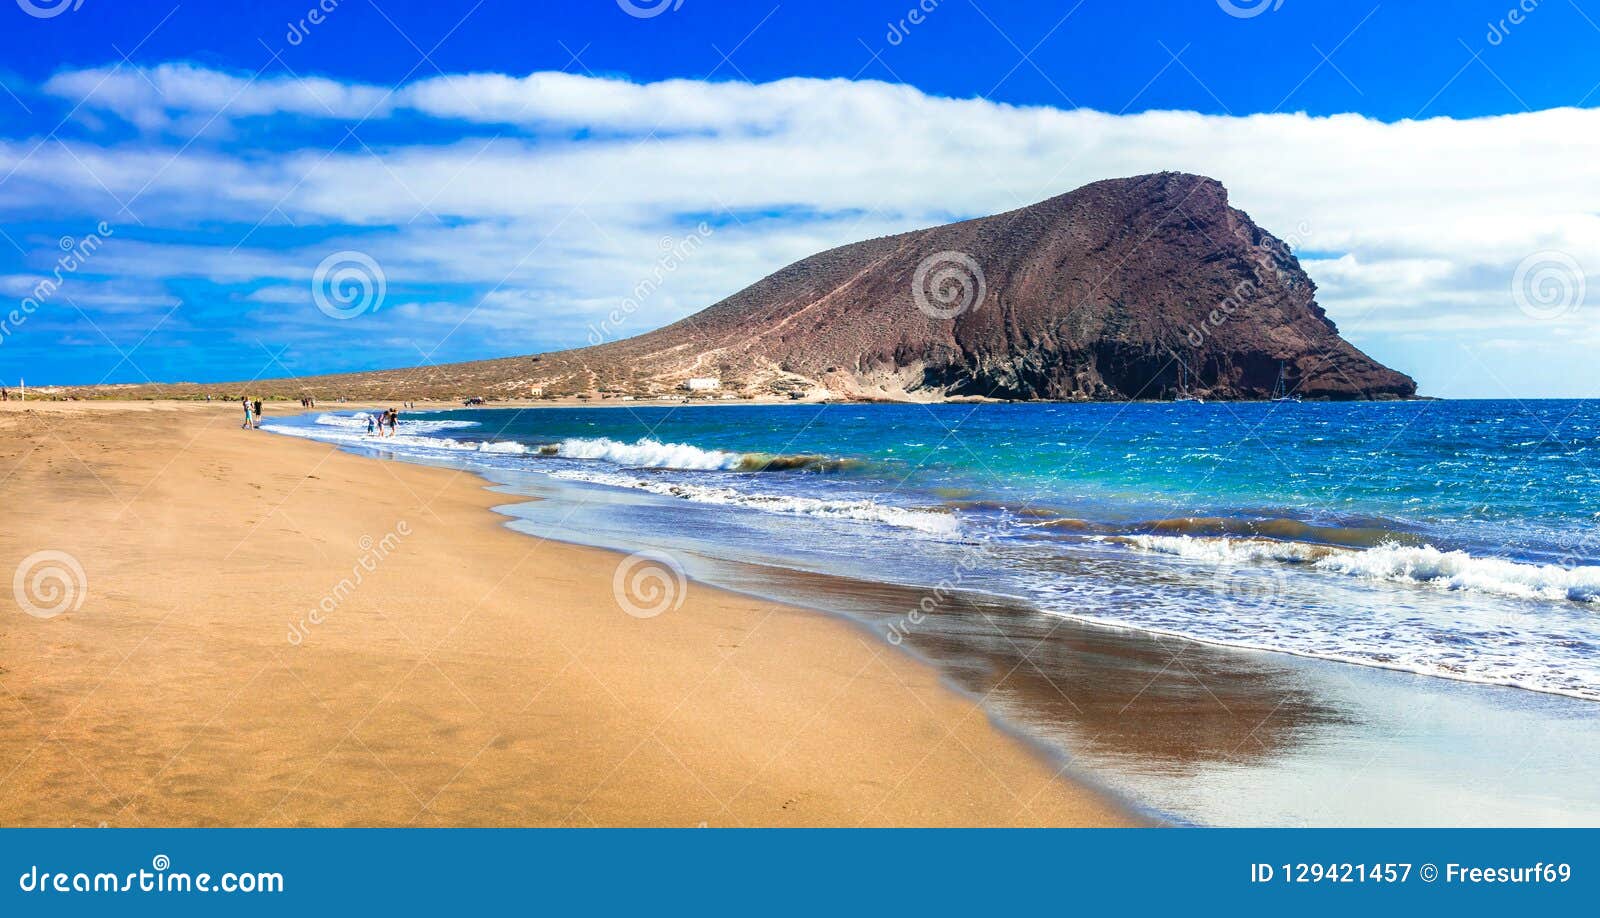 best beaches of tenerife island - la tejita beach.